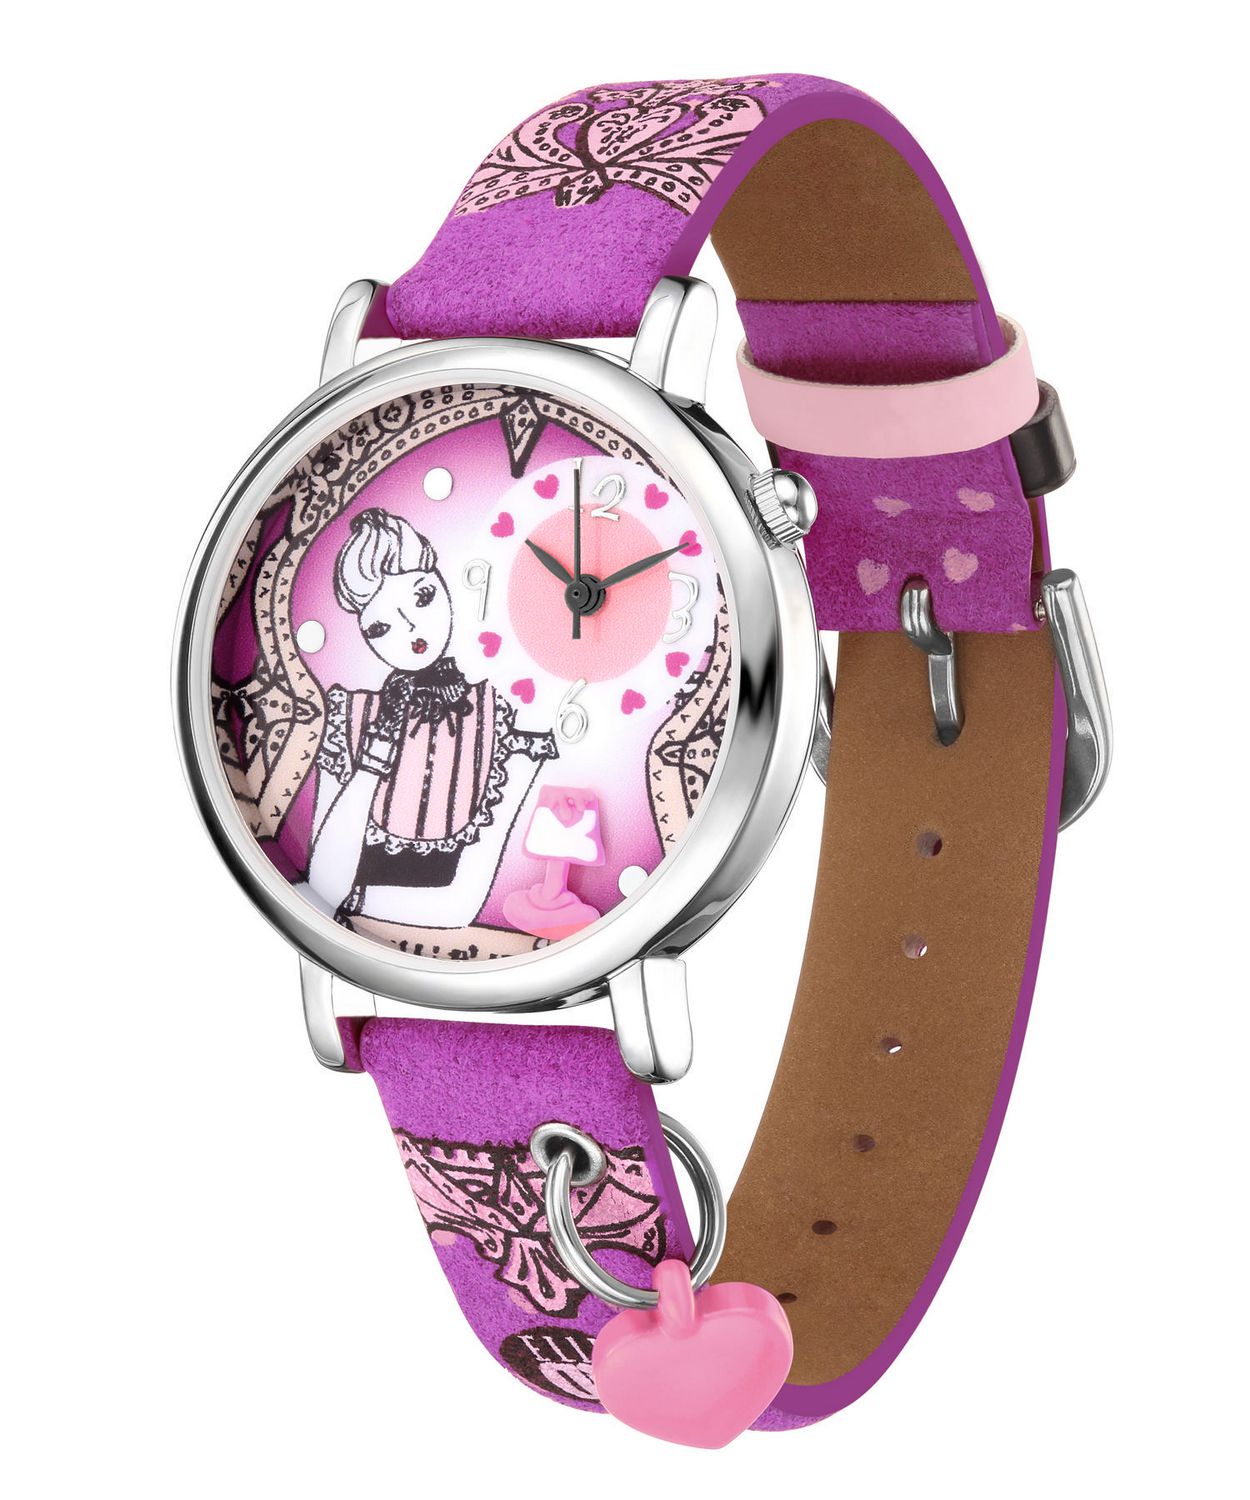 Часы girl. Bolun часы девочки. Новая коллекция часов для девчк. Часы Purple Gold механические женские. Watch me girls